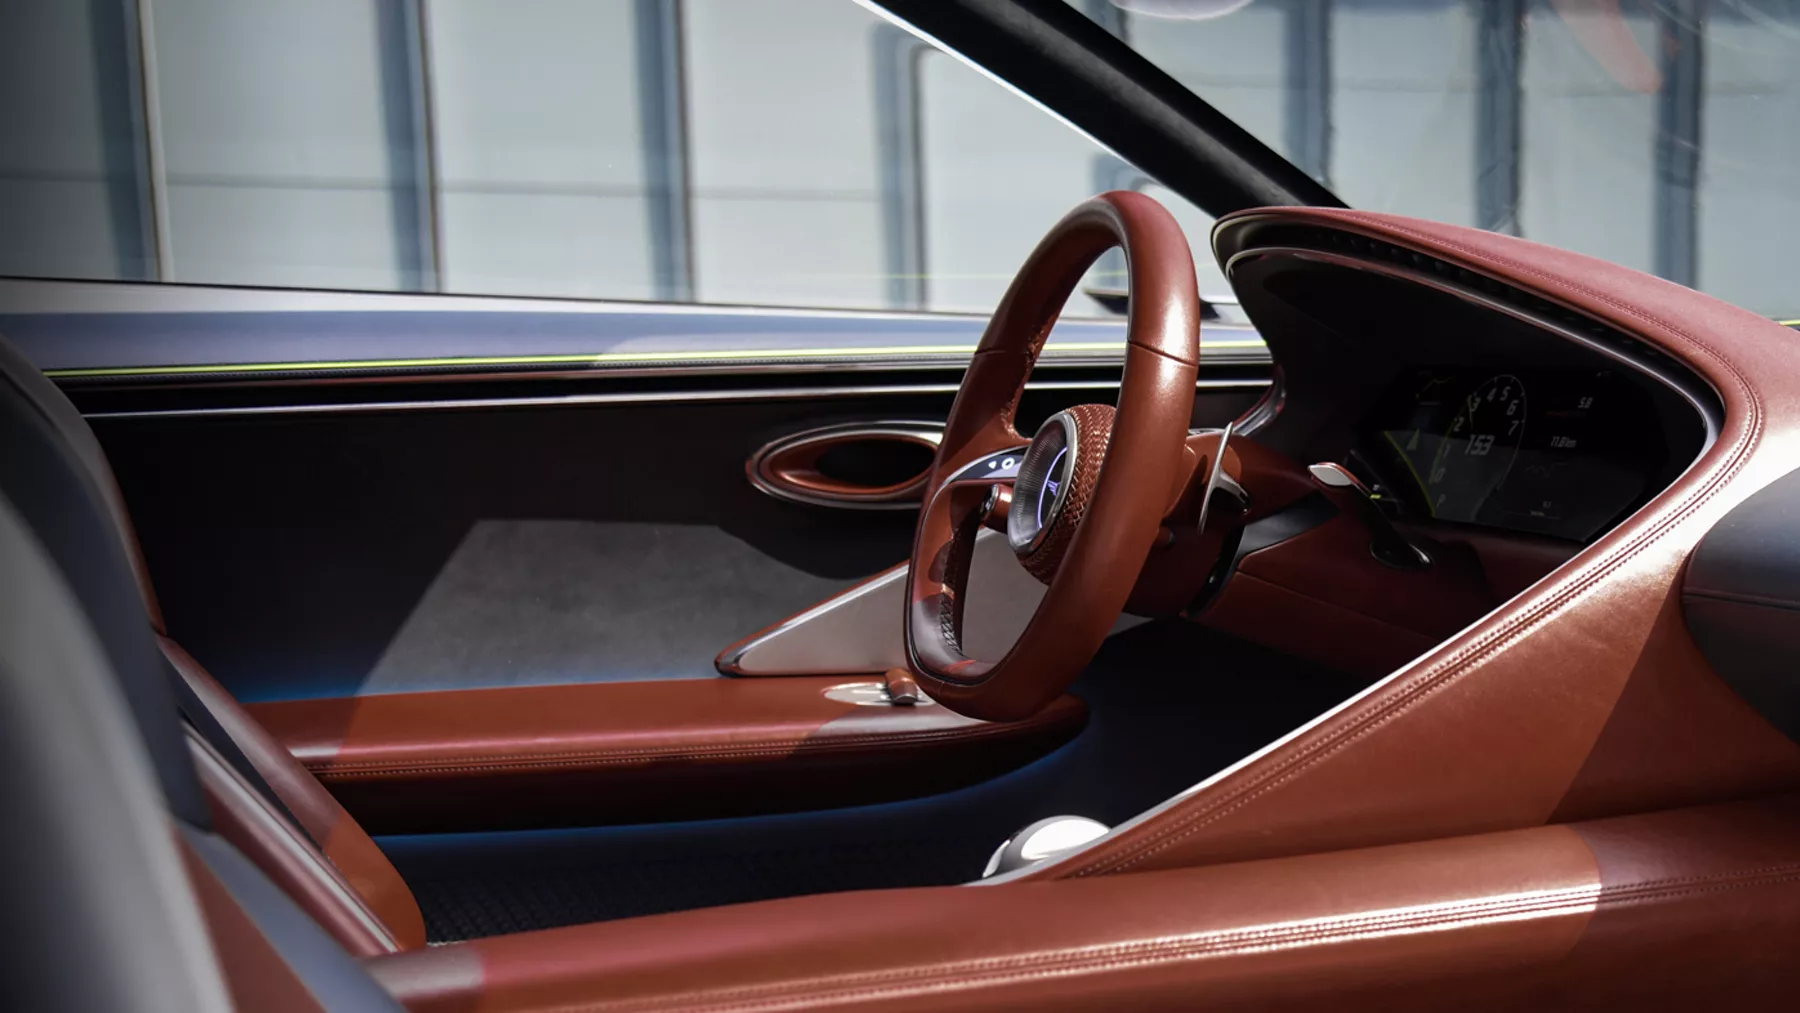 X Concept steering wheel and driver’s-side door.